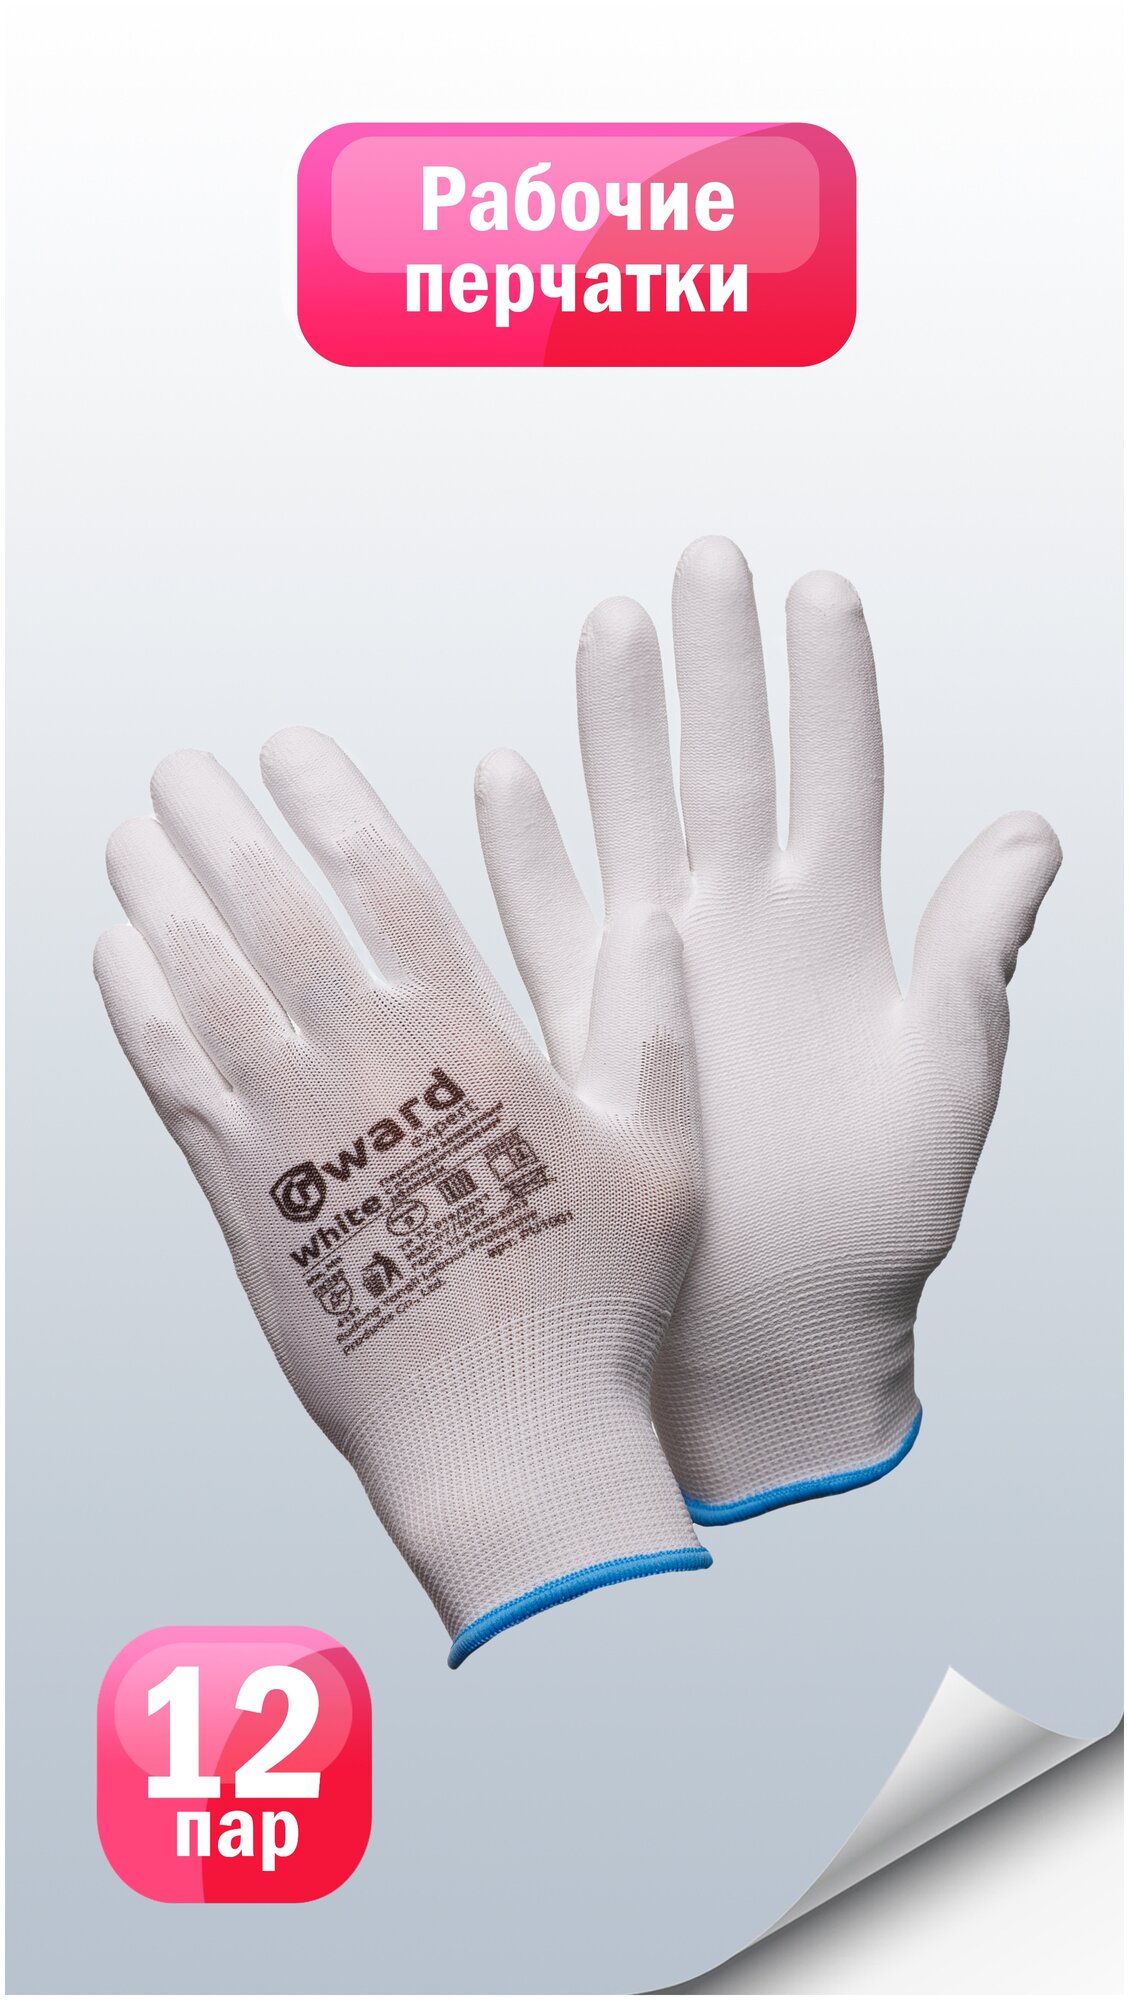 Защитные перчатки из нейлона с полиуретаном Gward White размер 10 пар 12